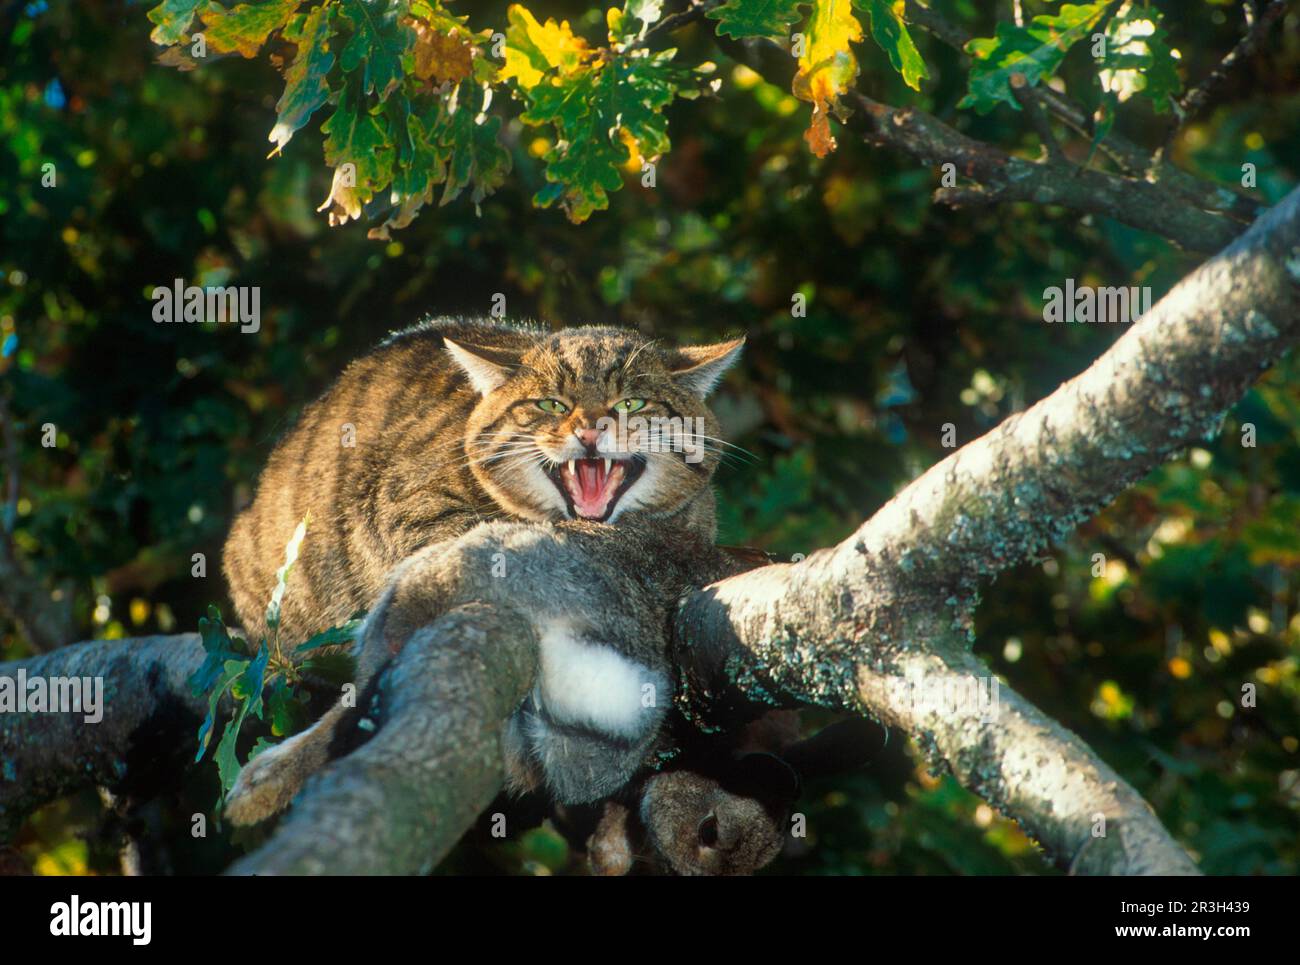 Chat sauvage européen, chats sauvages européens (Felis silvestris), chats prédateurs, prédateurs, mammifères, animaux, Chat sauvage européen dans un arbre avec proie Banque D'Images